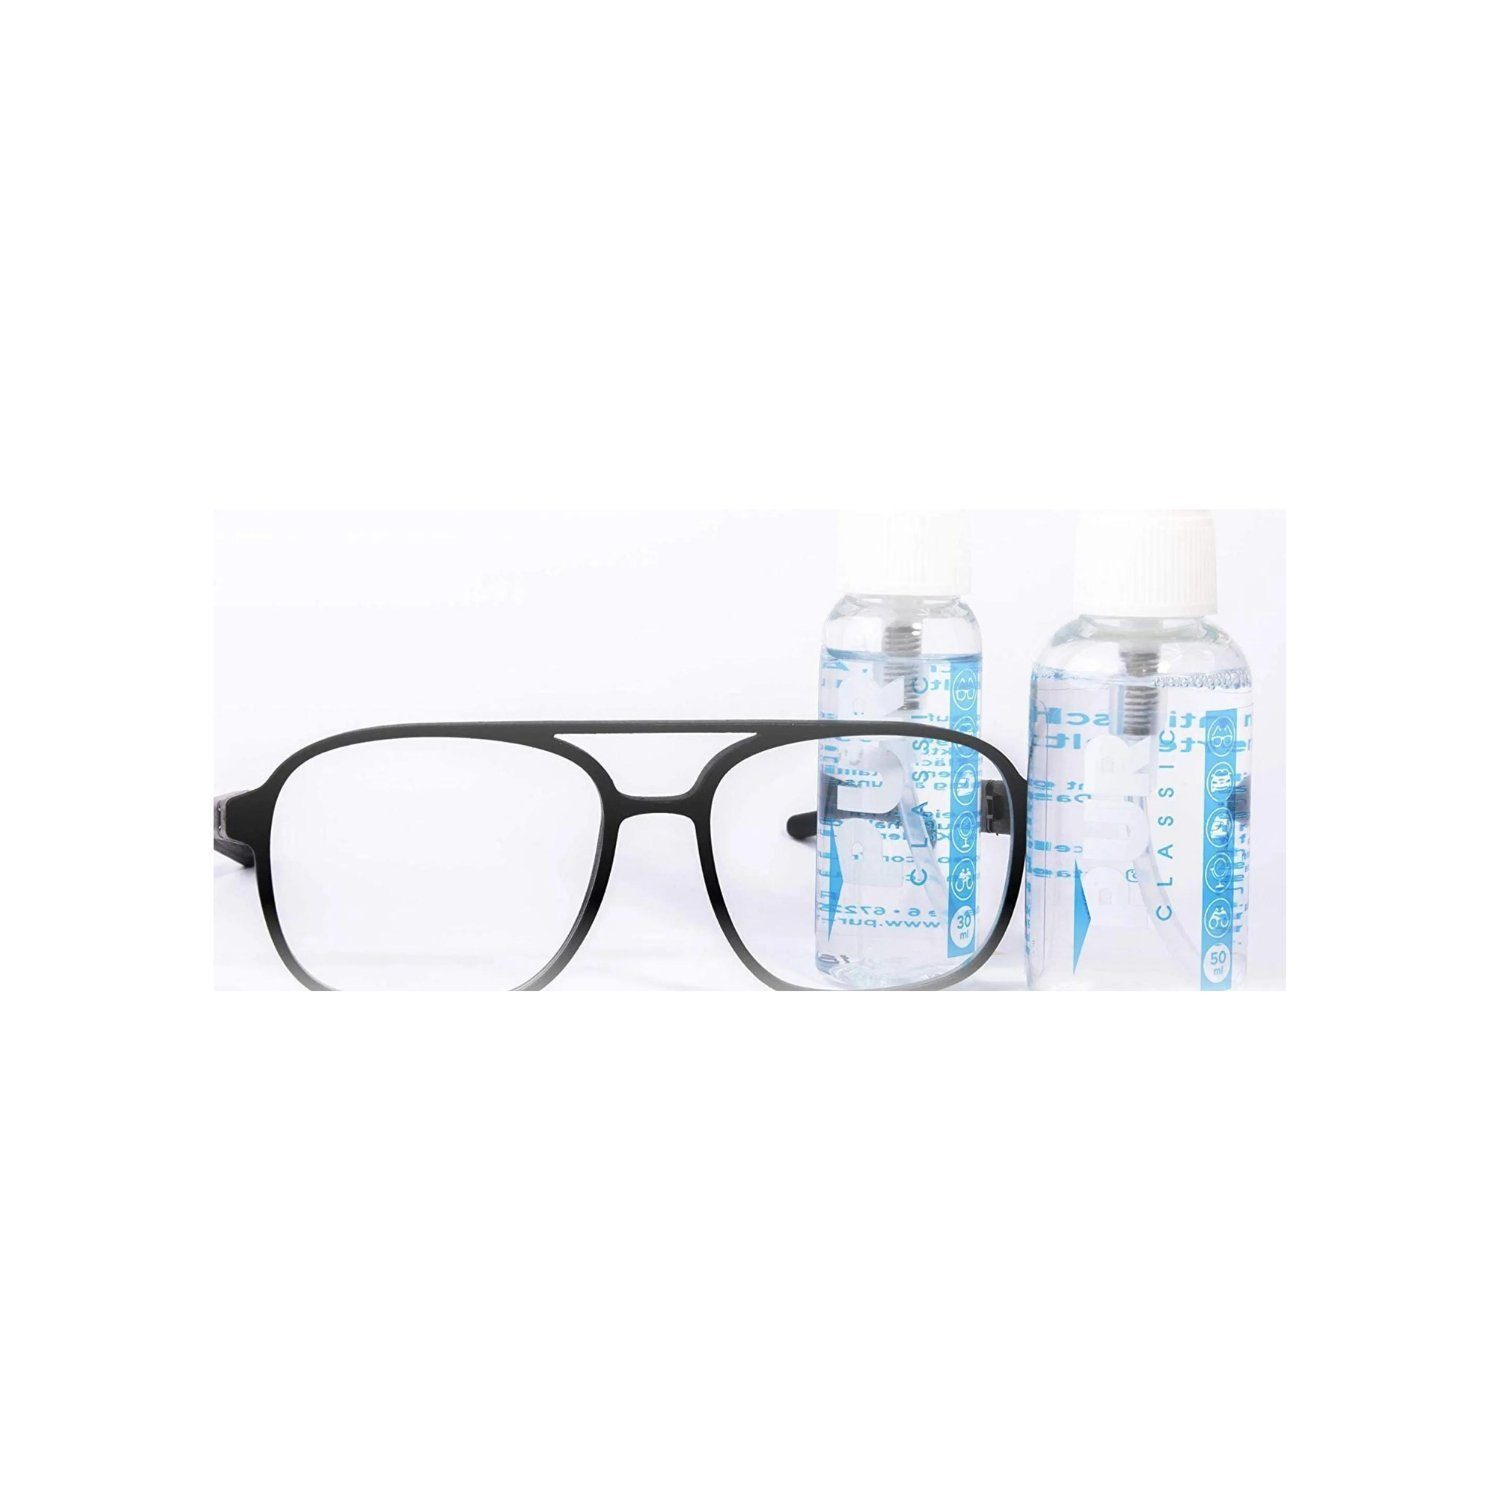 Brille Antibeschlag Ideal Bad Spray Autoscheiben,Helmvisiere, PUR Brillen, PREMIUM für